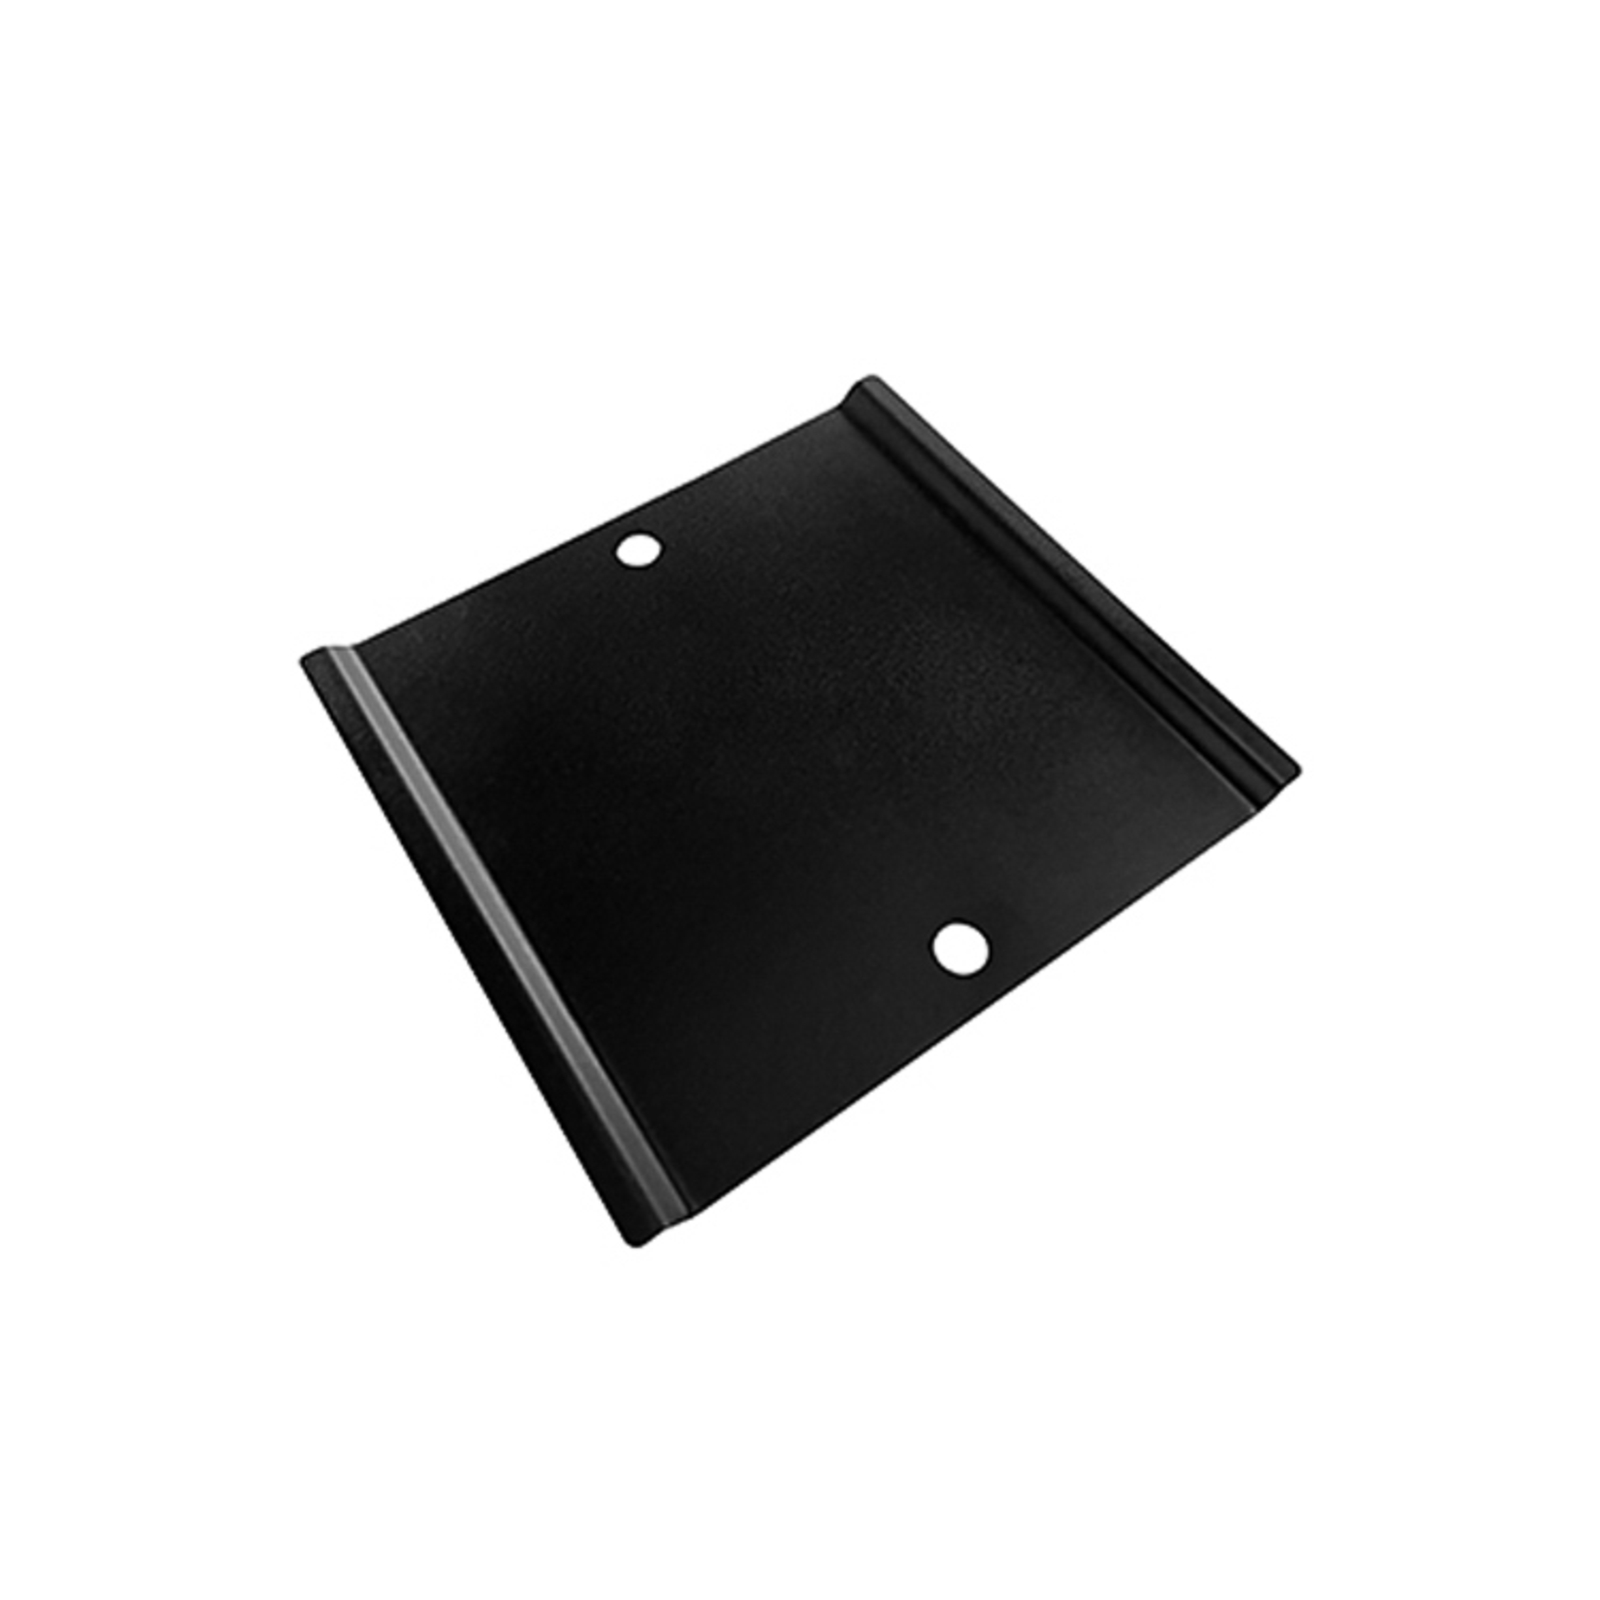 Karman mounting plate for Abachina black